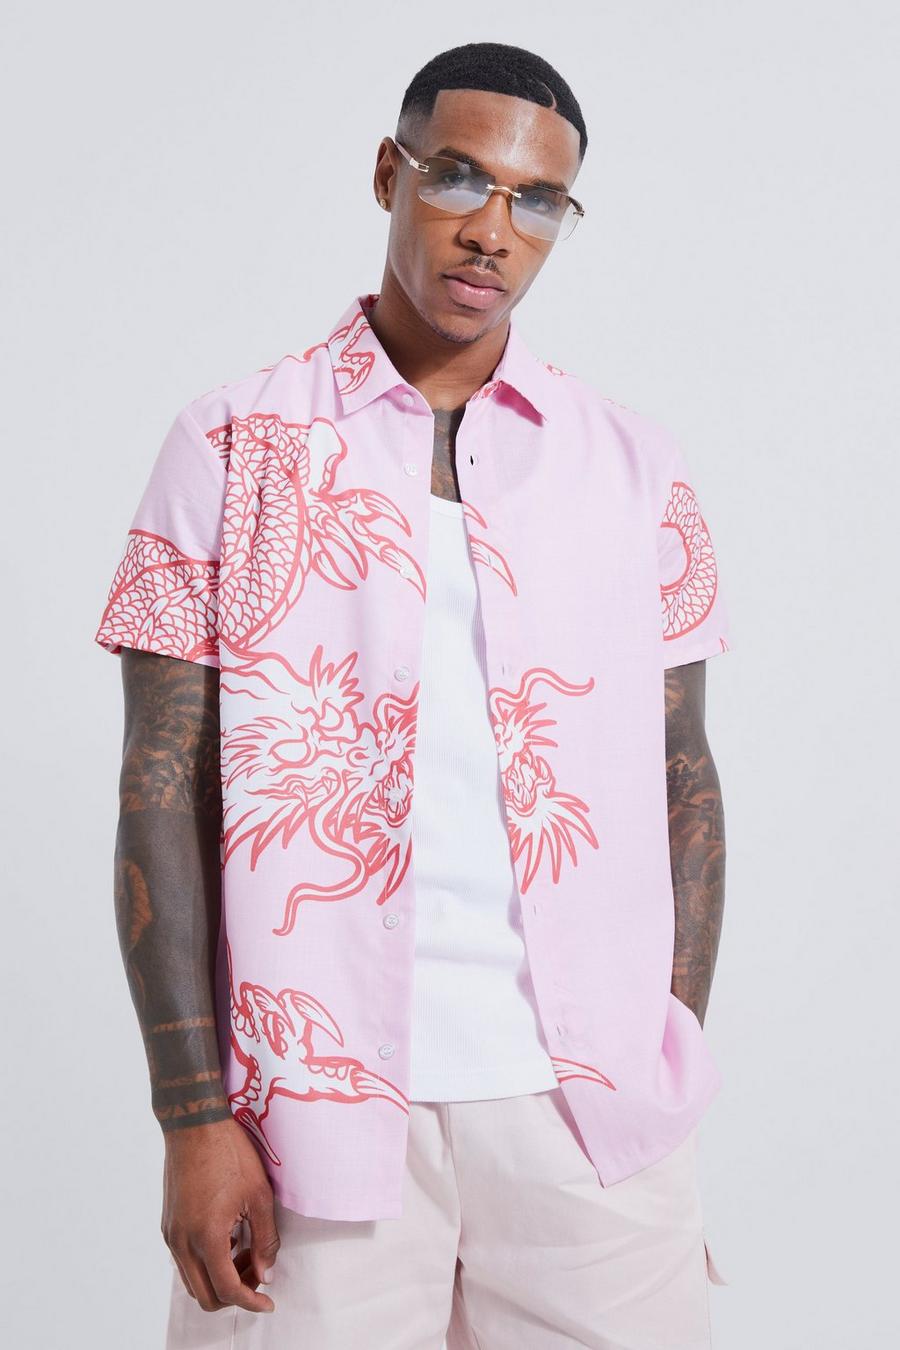 Men's Printed Shirts | Mens Patterned Shirts & Floral Shirts | boohoo UK